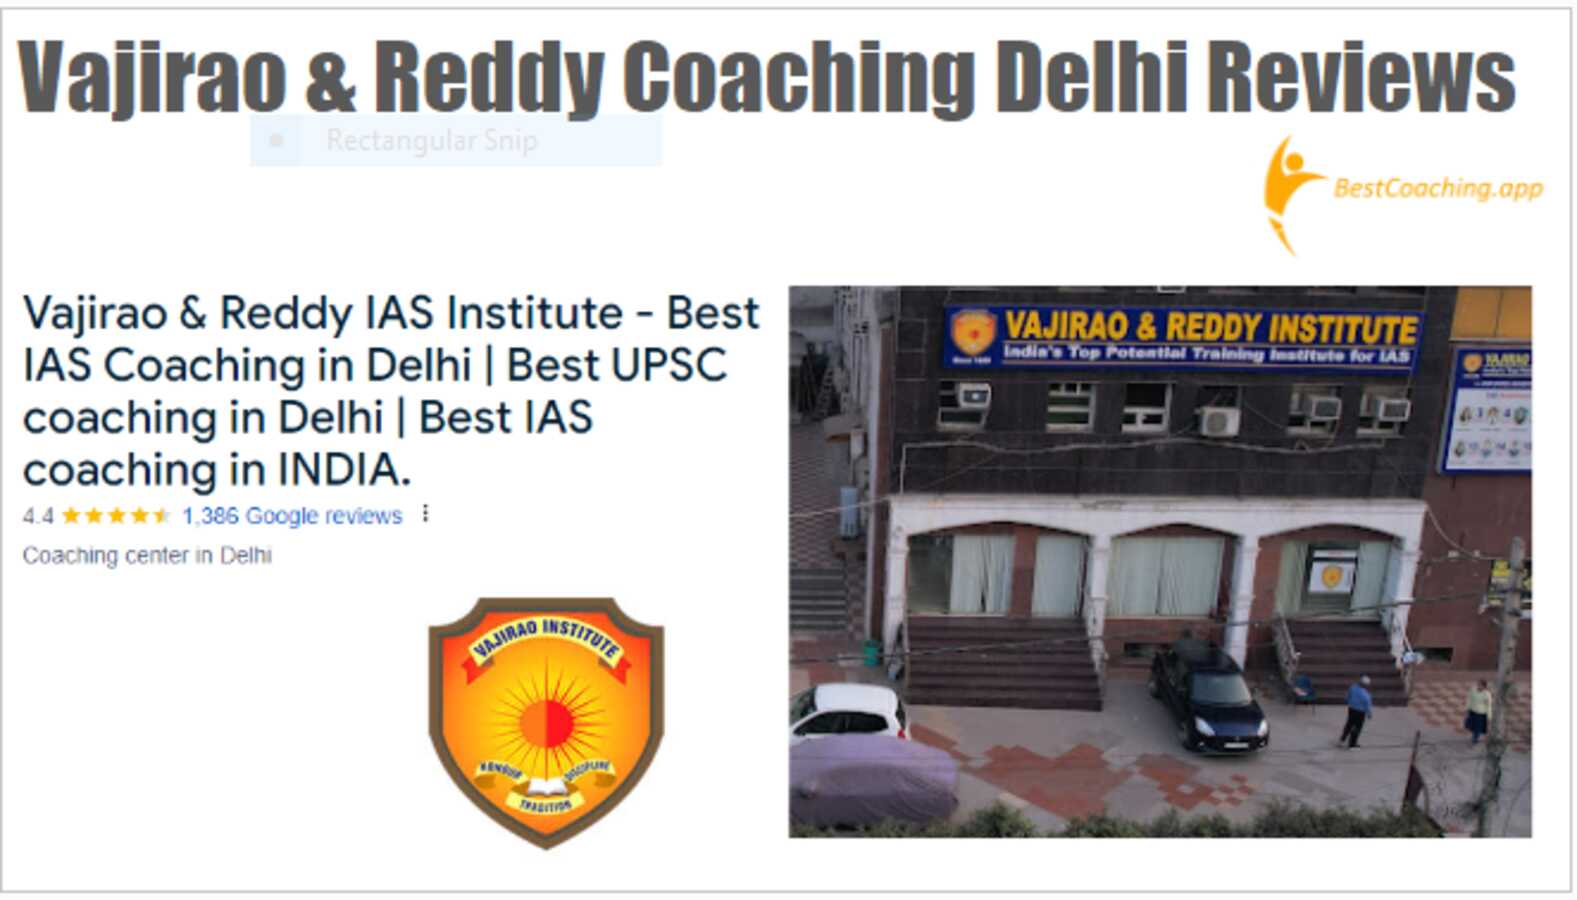 Vajirao & Reddy Coaching Delhi Reviews